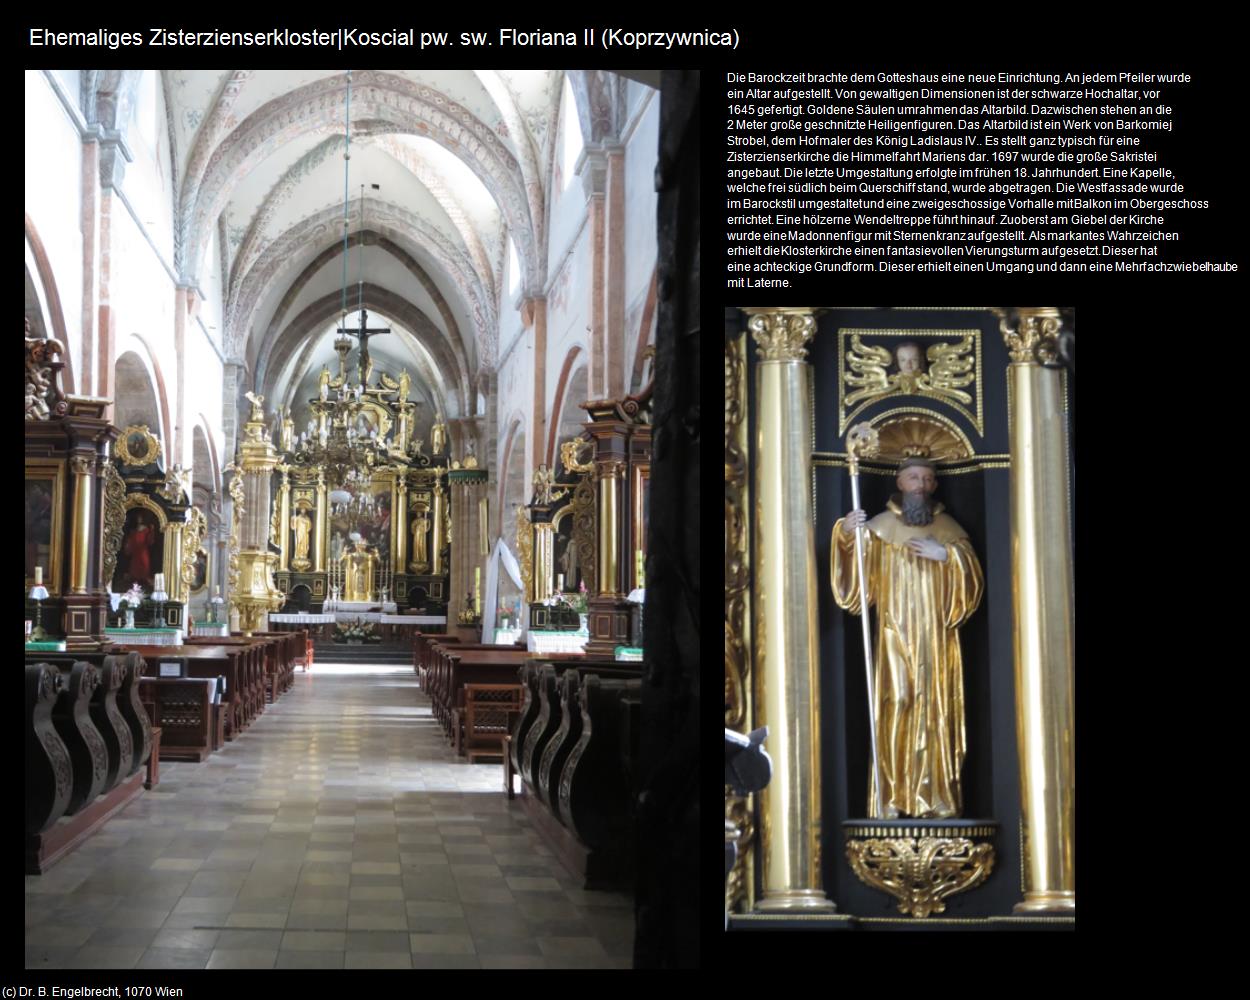 Ehem. Zisterzienserkloster II (Koprzywnica) in POLEN-Galizien